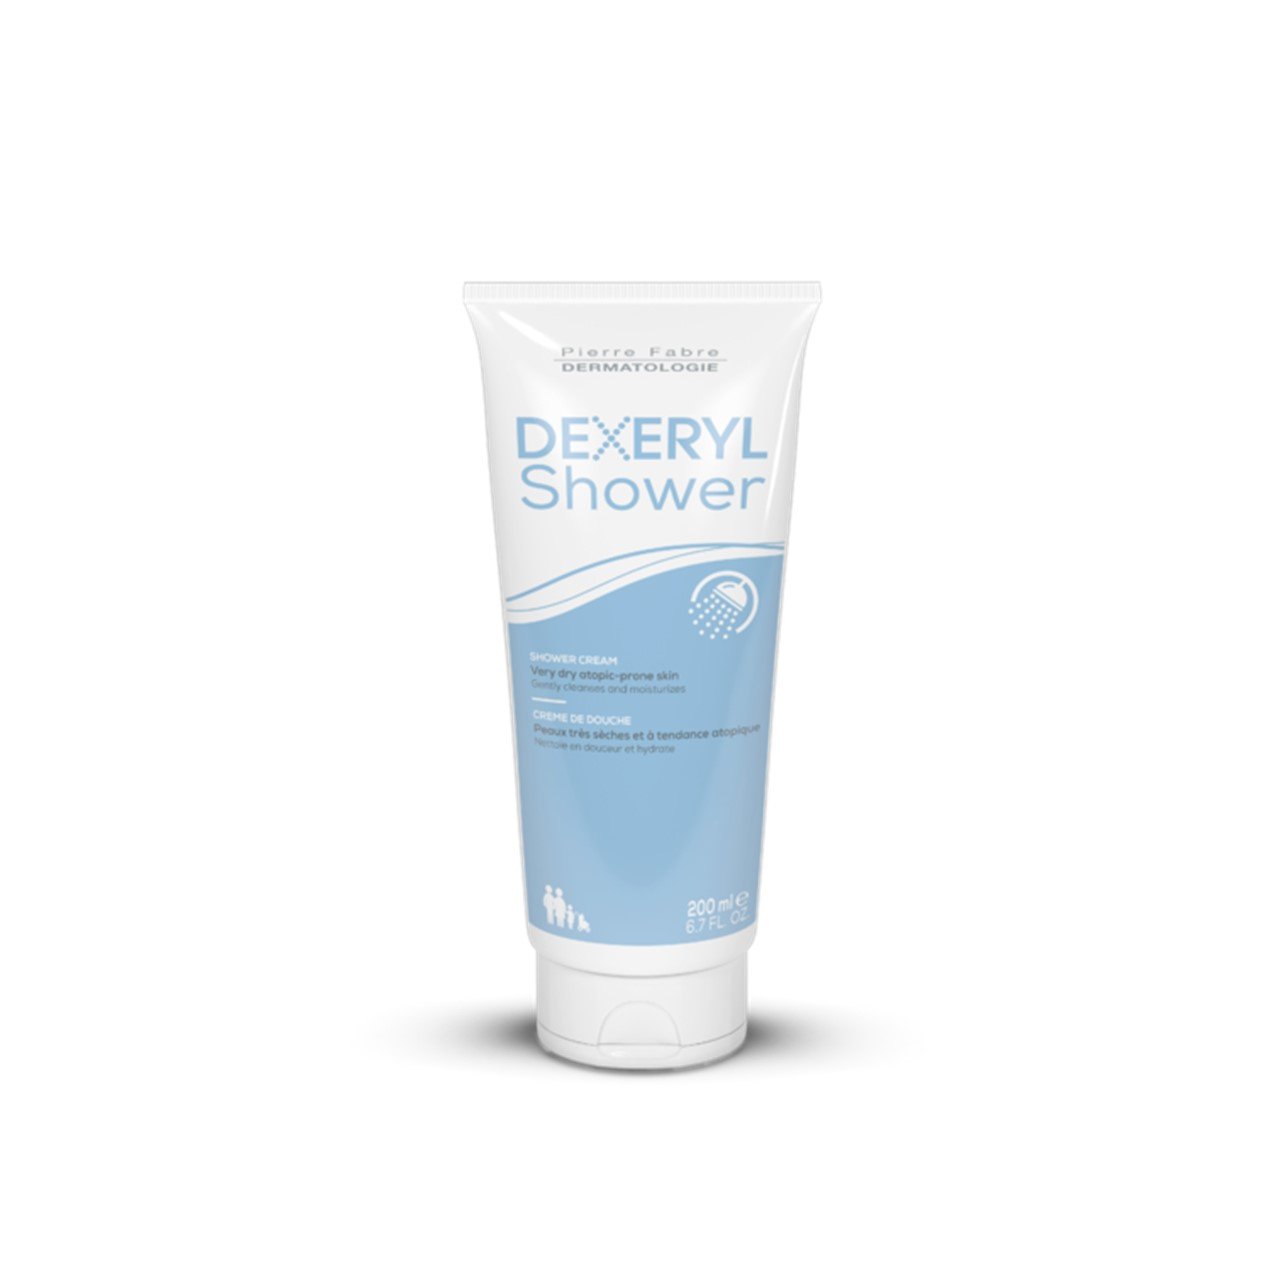 Pierre Fabre Dermatologie Dexeryl Shower Cleansing Cream 200ml (6.76fl oz)